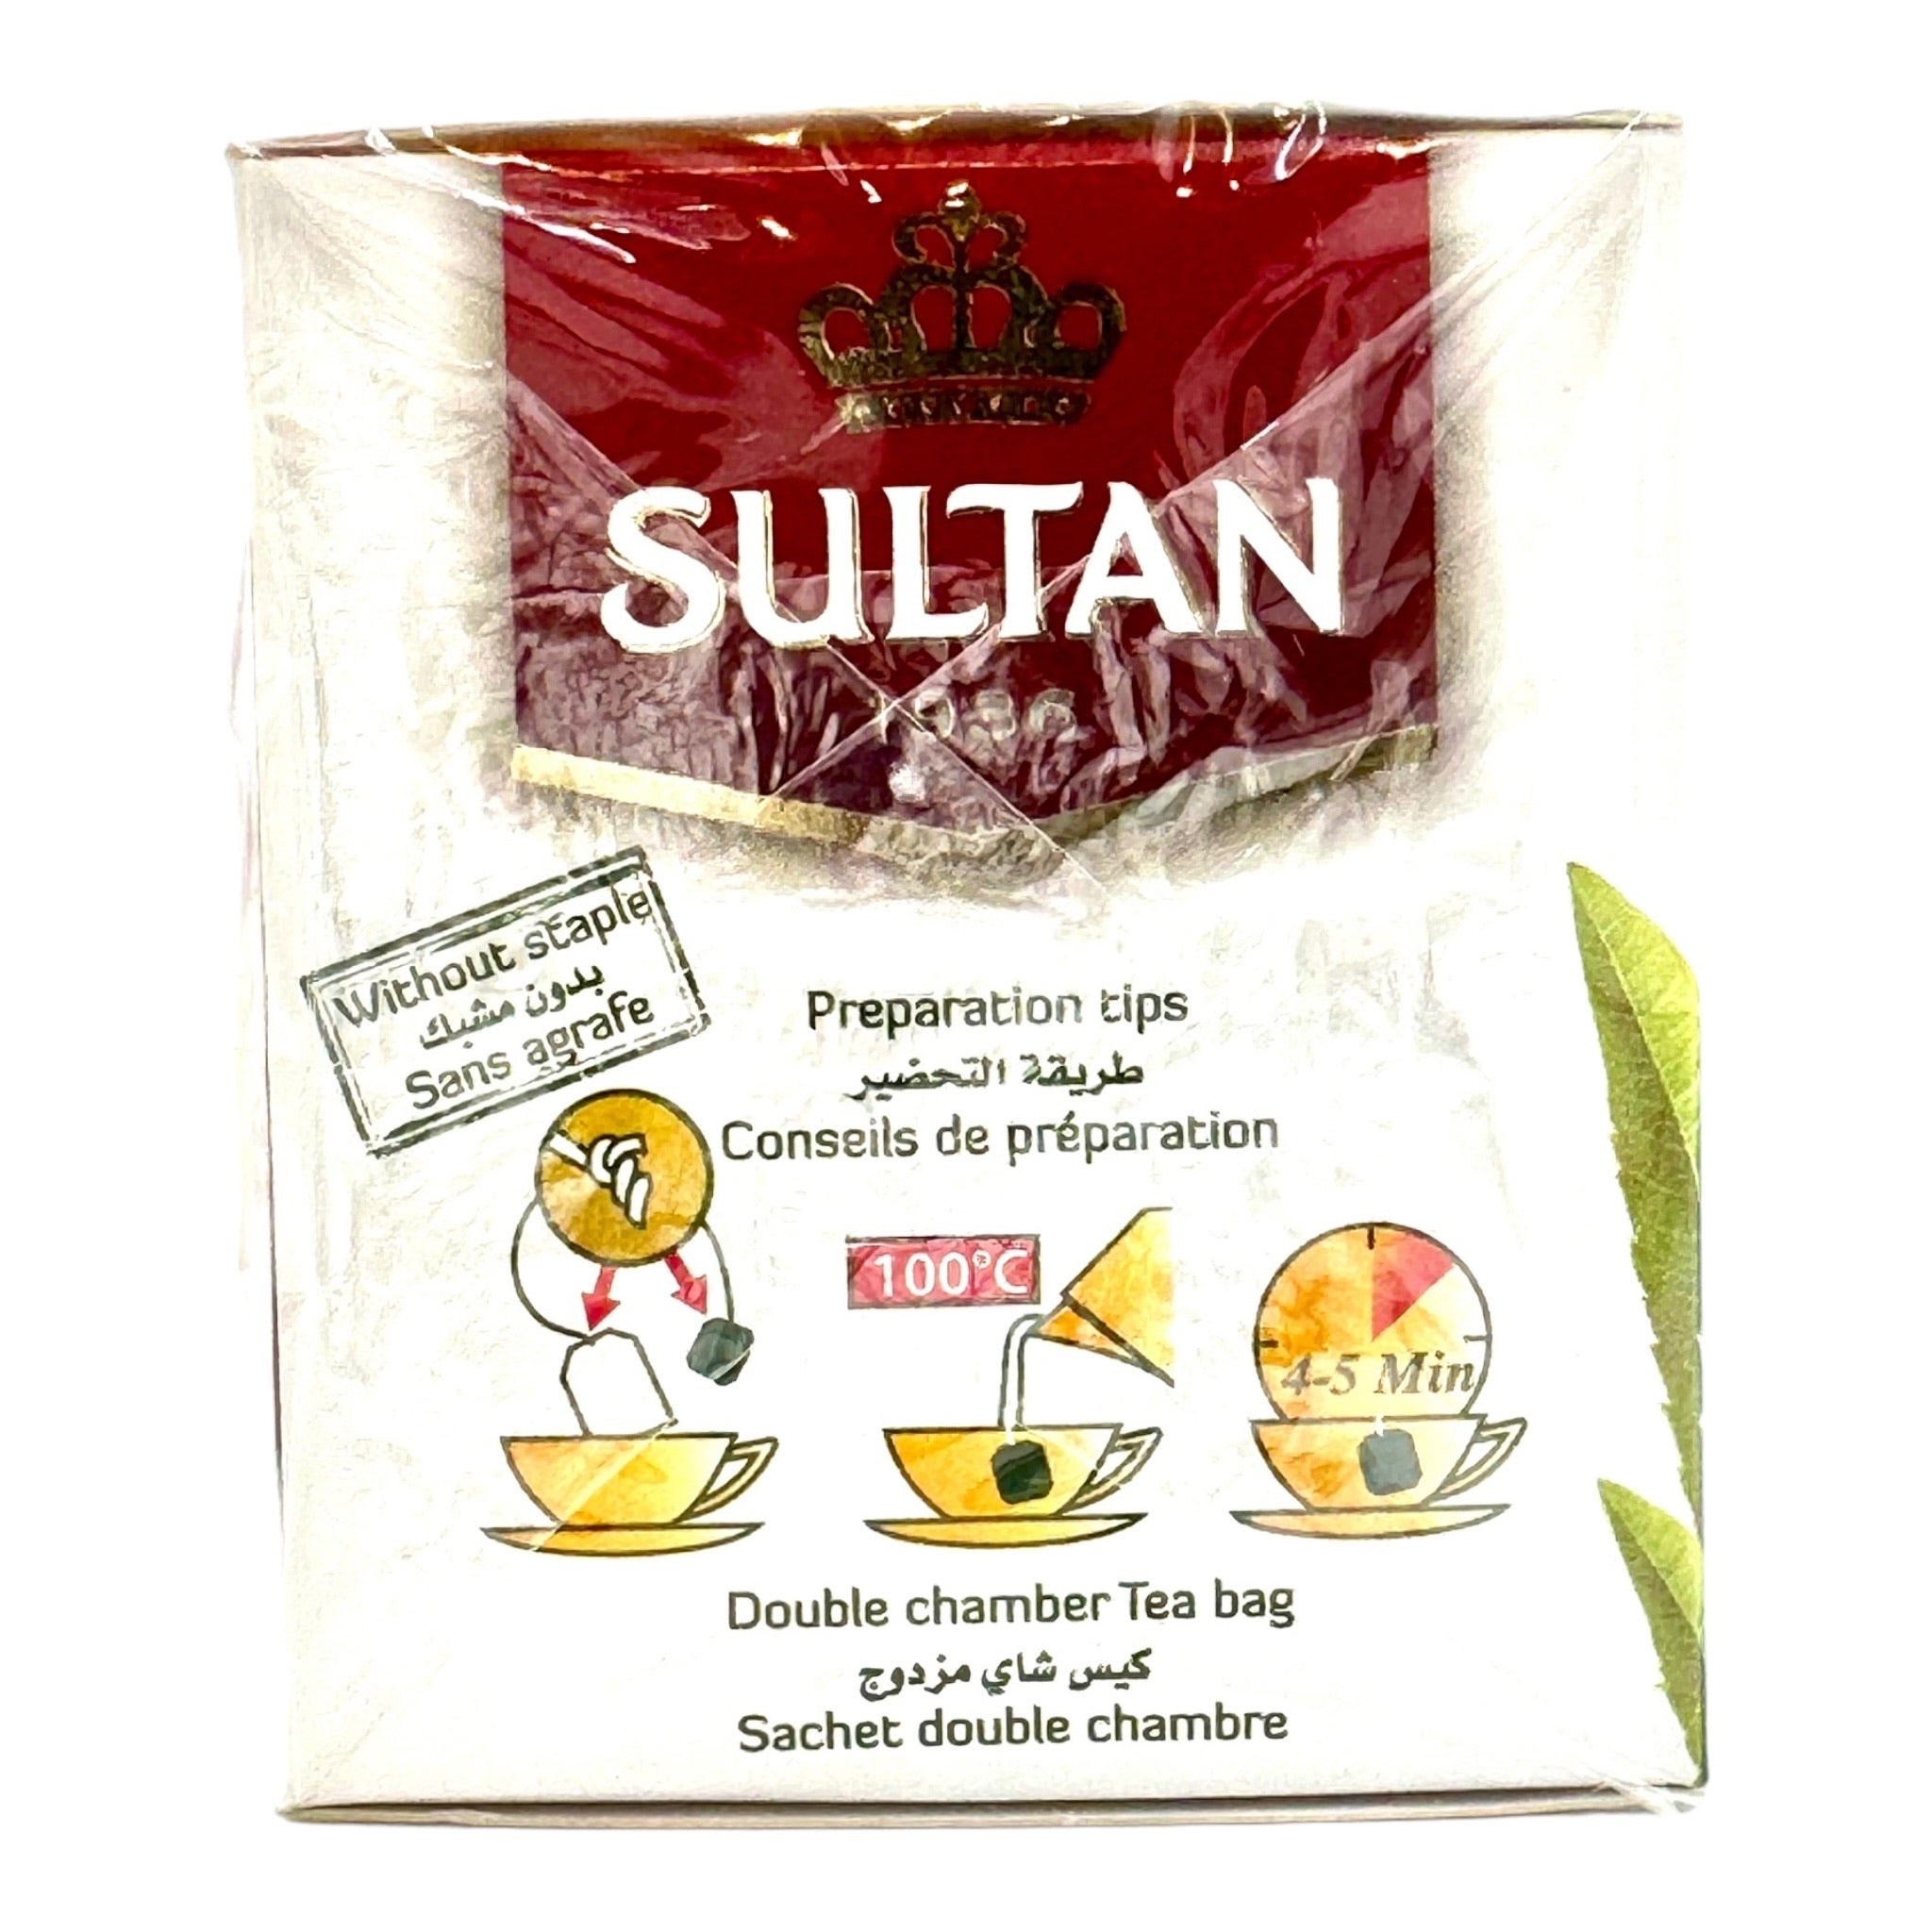 Sultan Moroccan Verbena Tea Bags - La Verveine